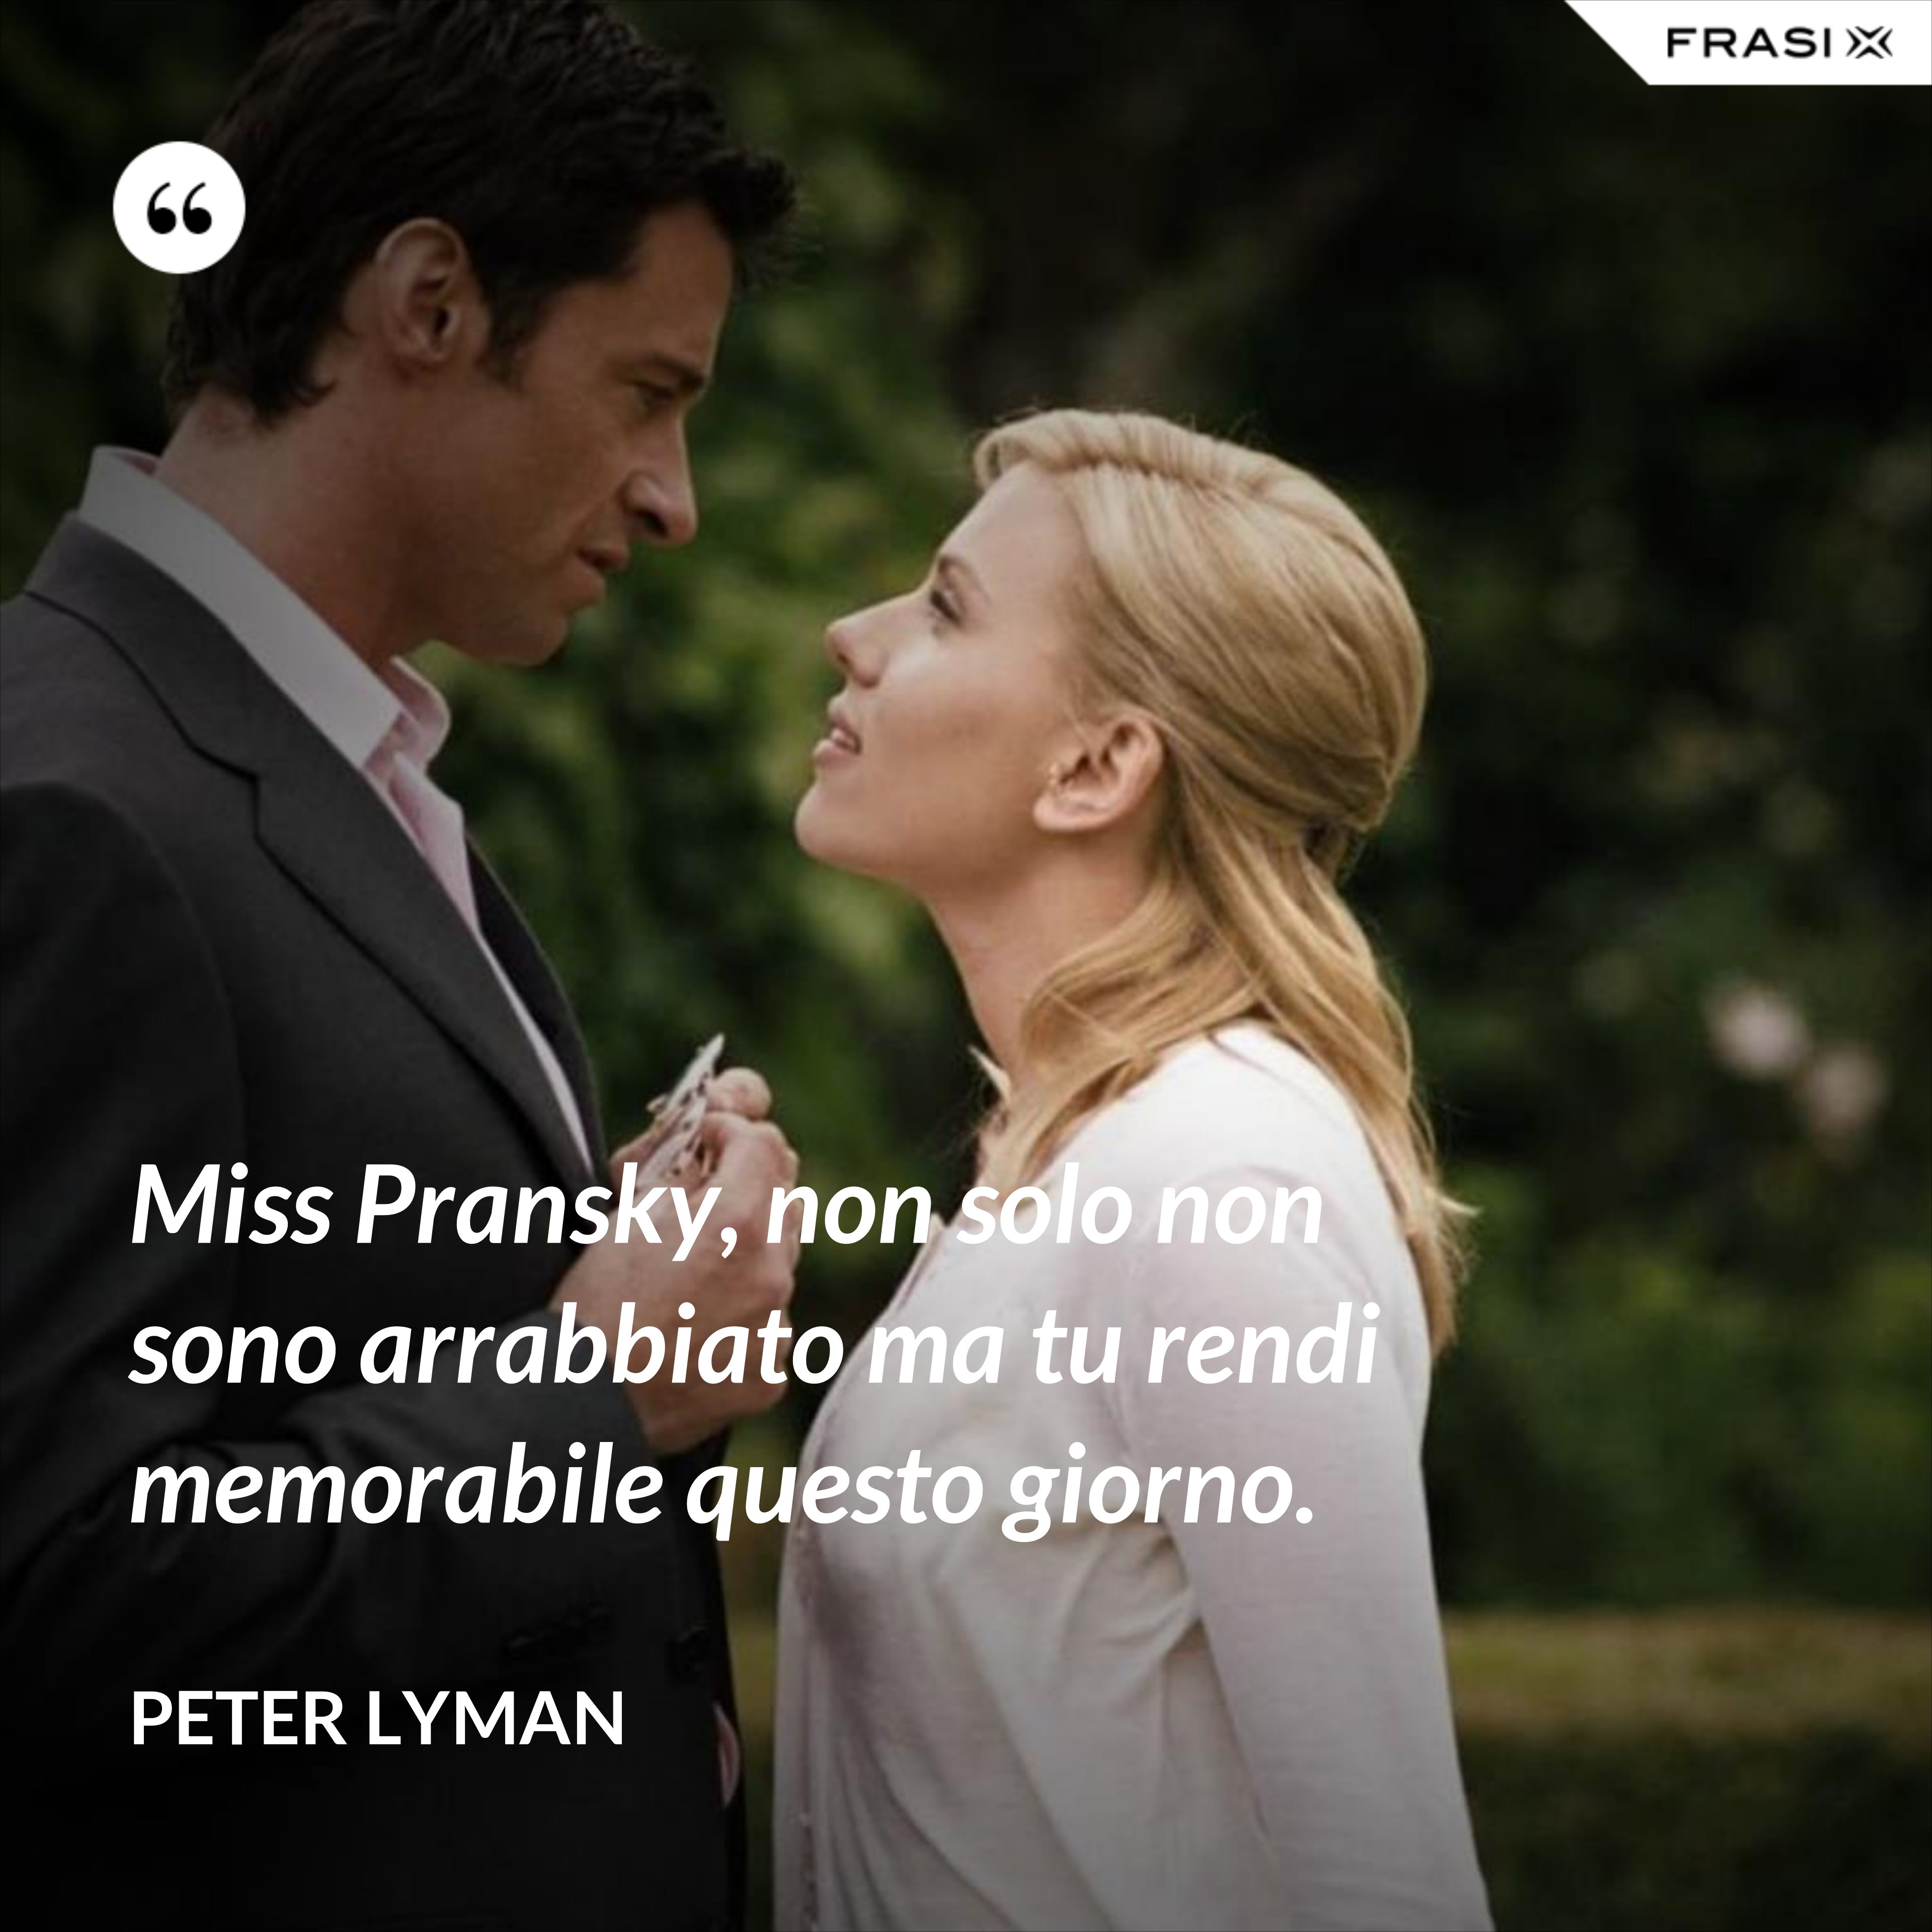 Miss Pransky, non solo non sono arrabbiato ma tu rendi memorabile questo giorno. - Peter Lyman